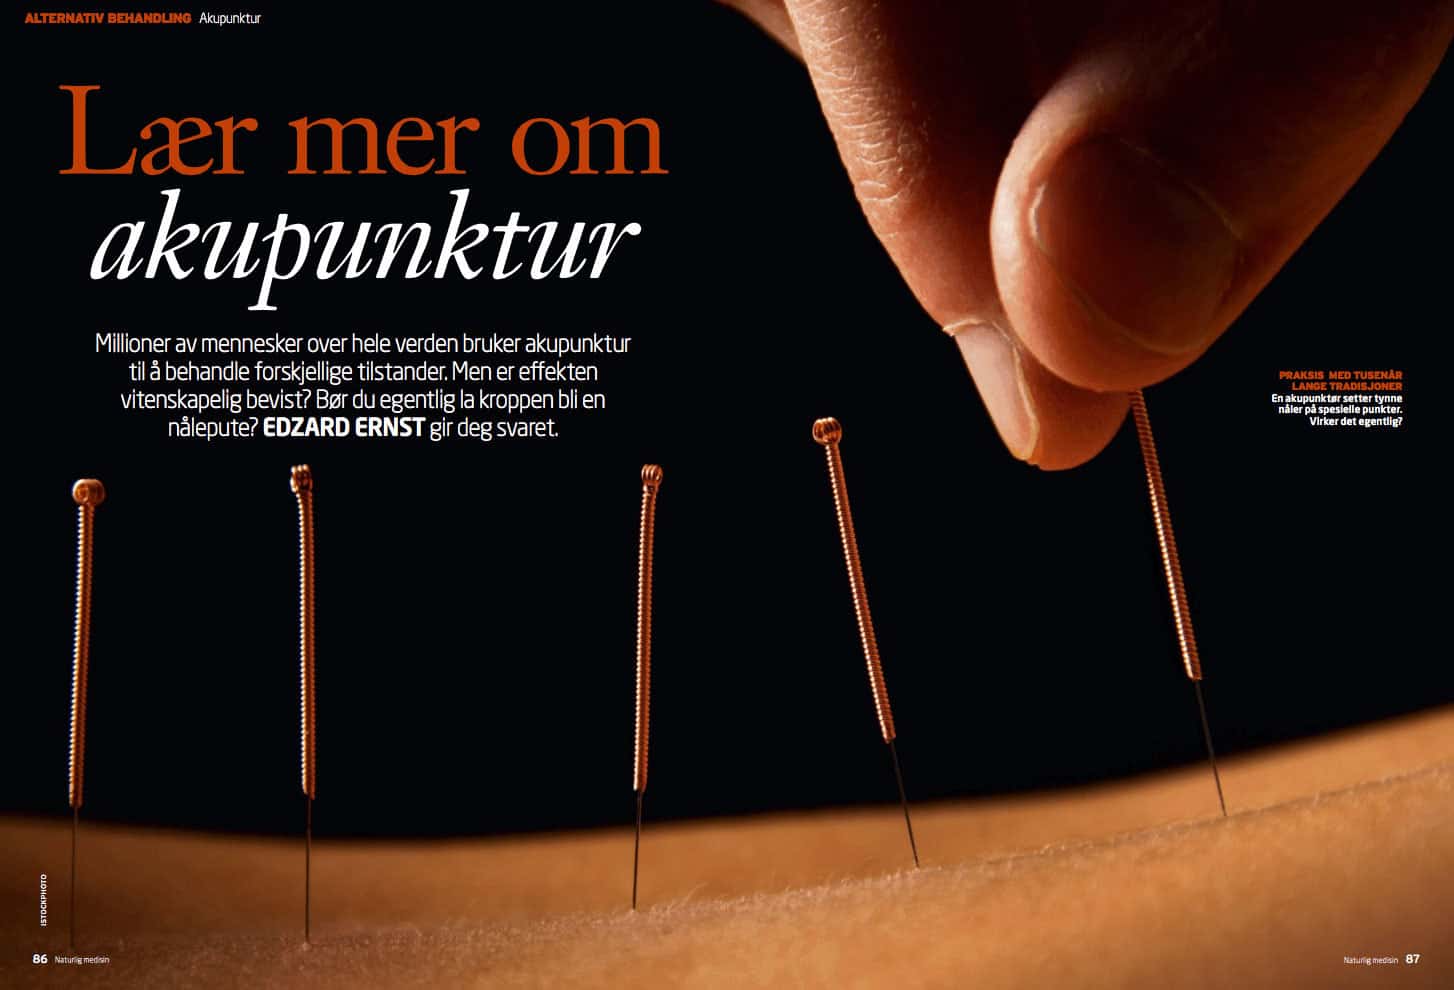 Lær mer om akupunktur, oppslag